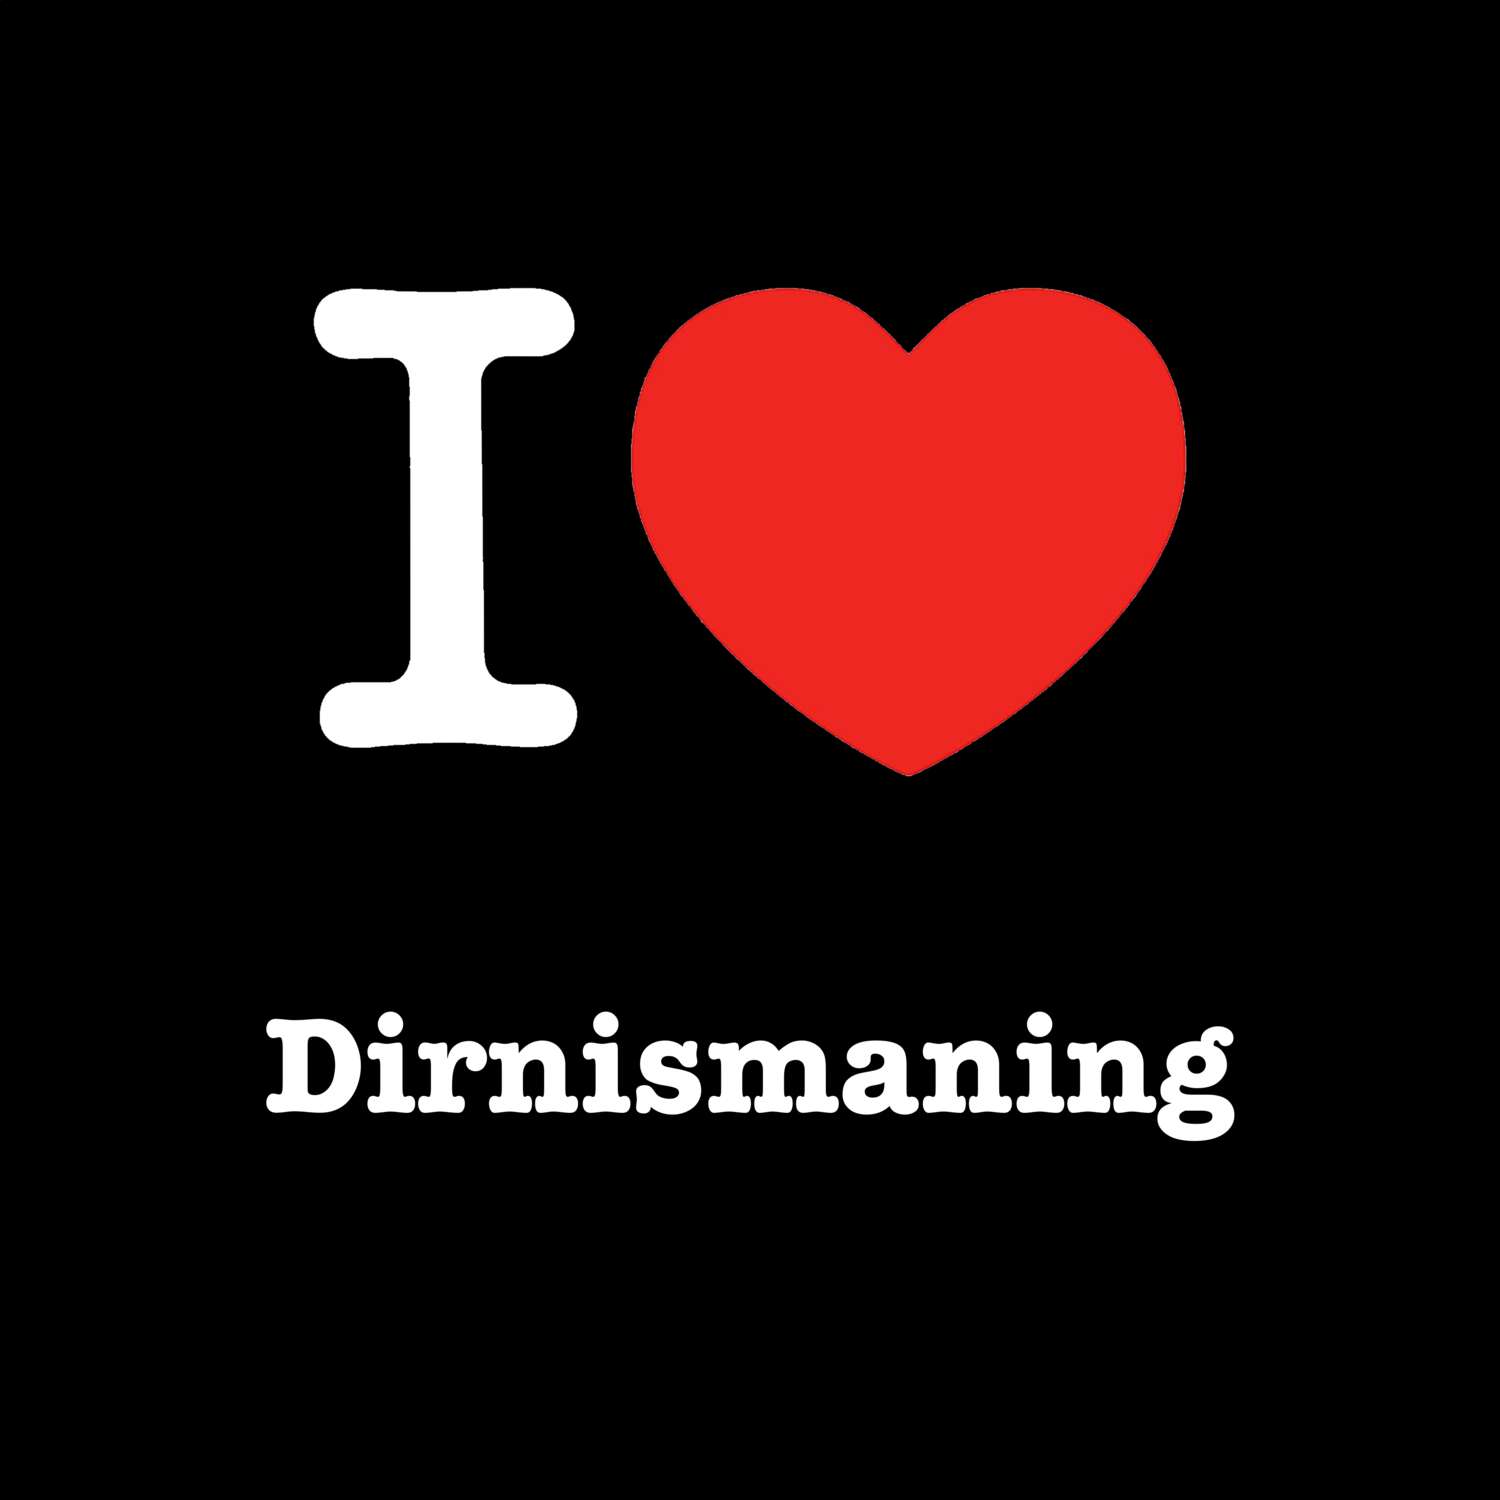 Dirnismaning T-Shirt »I love«